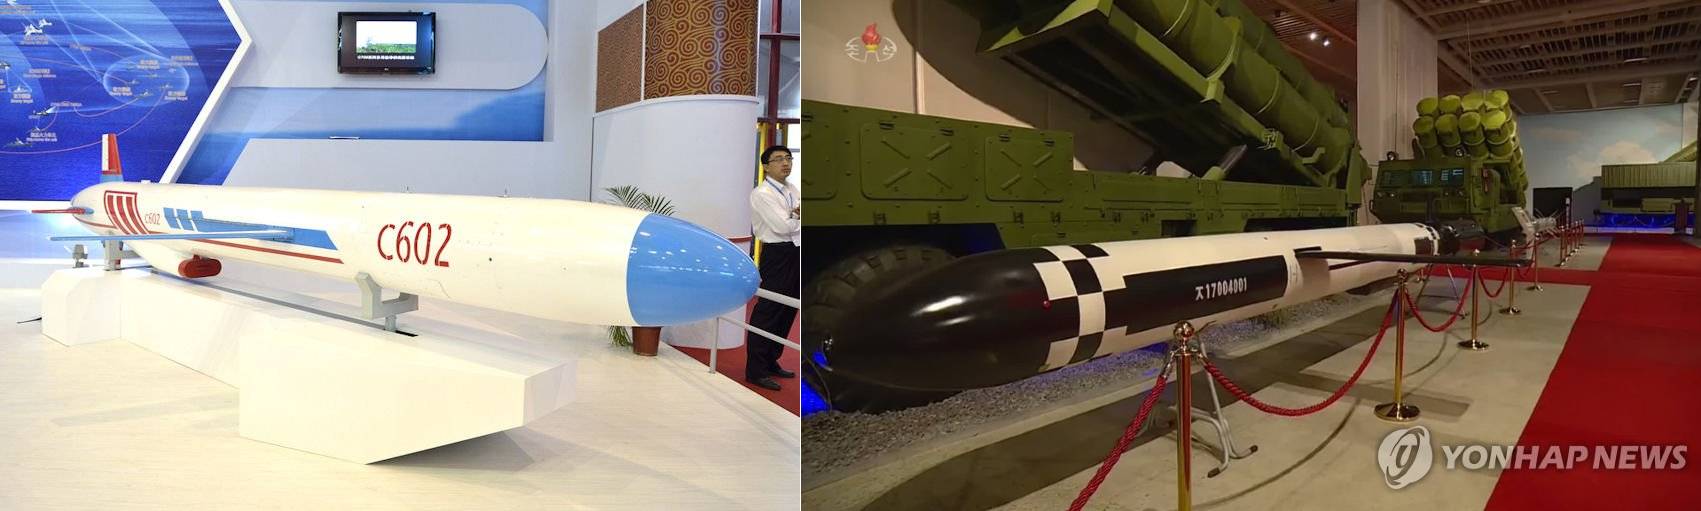 (좌) 중국의 YJ-62 대함 순항미사일과 (우) 북한 자위-2021 전시회에서 공개된 신형 대함 순항미사일. YJ-62와 형상적 특징이 일치한다. <출처 : 연합뉴스, globalsecurity>